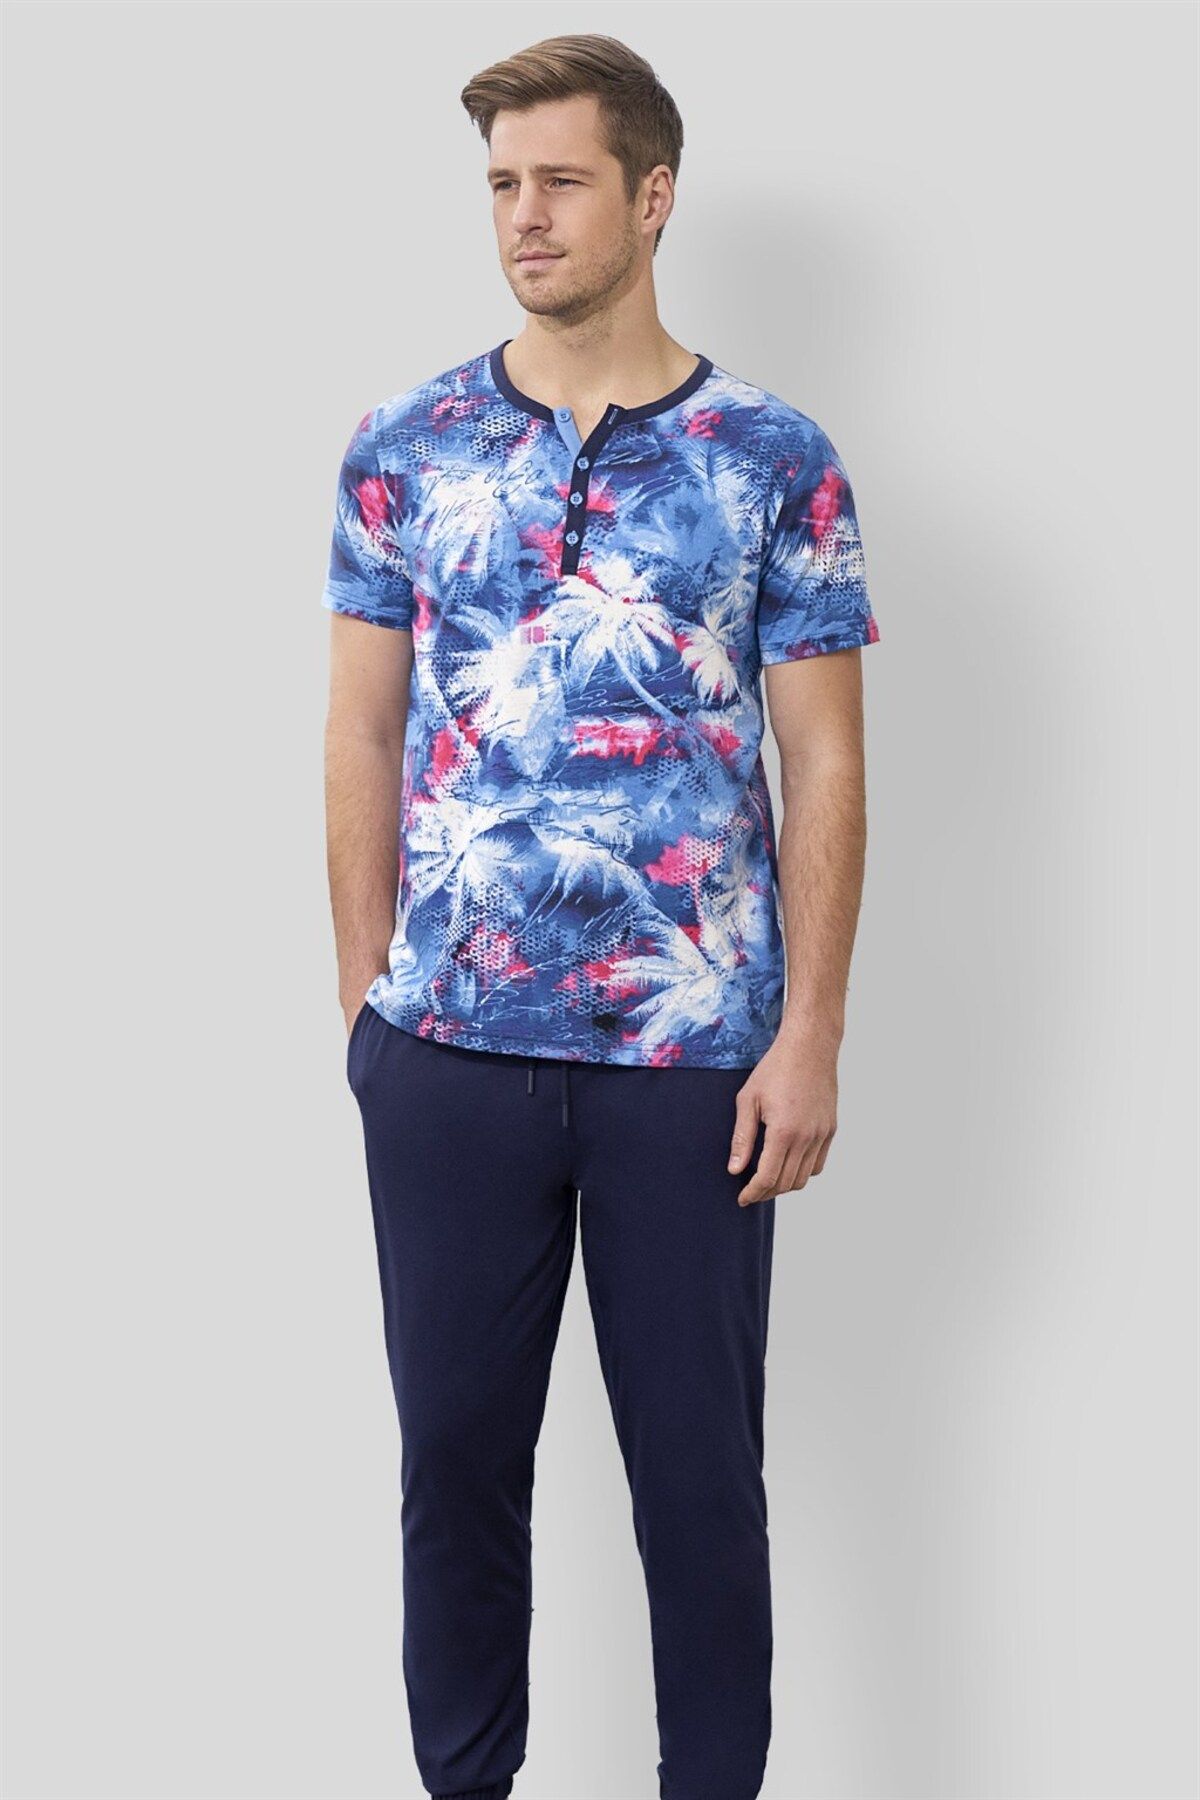 Doreanse Erkek Mavi Çok Renkli Desenli T-shirt Pijama Takımı 4572